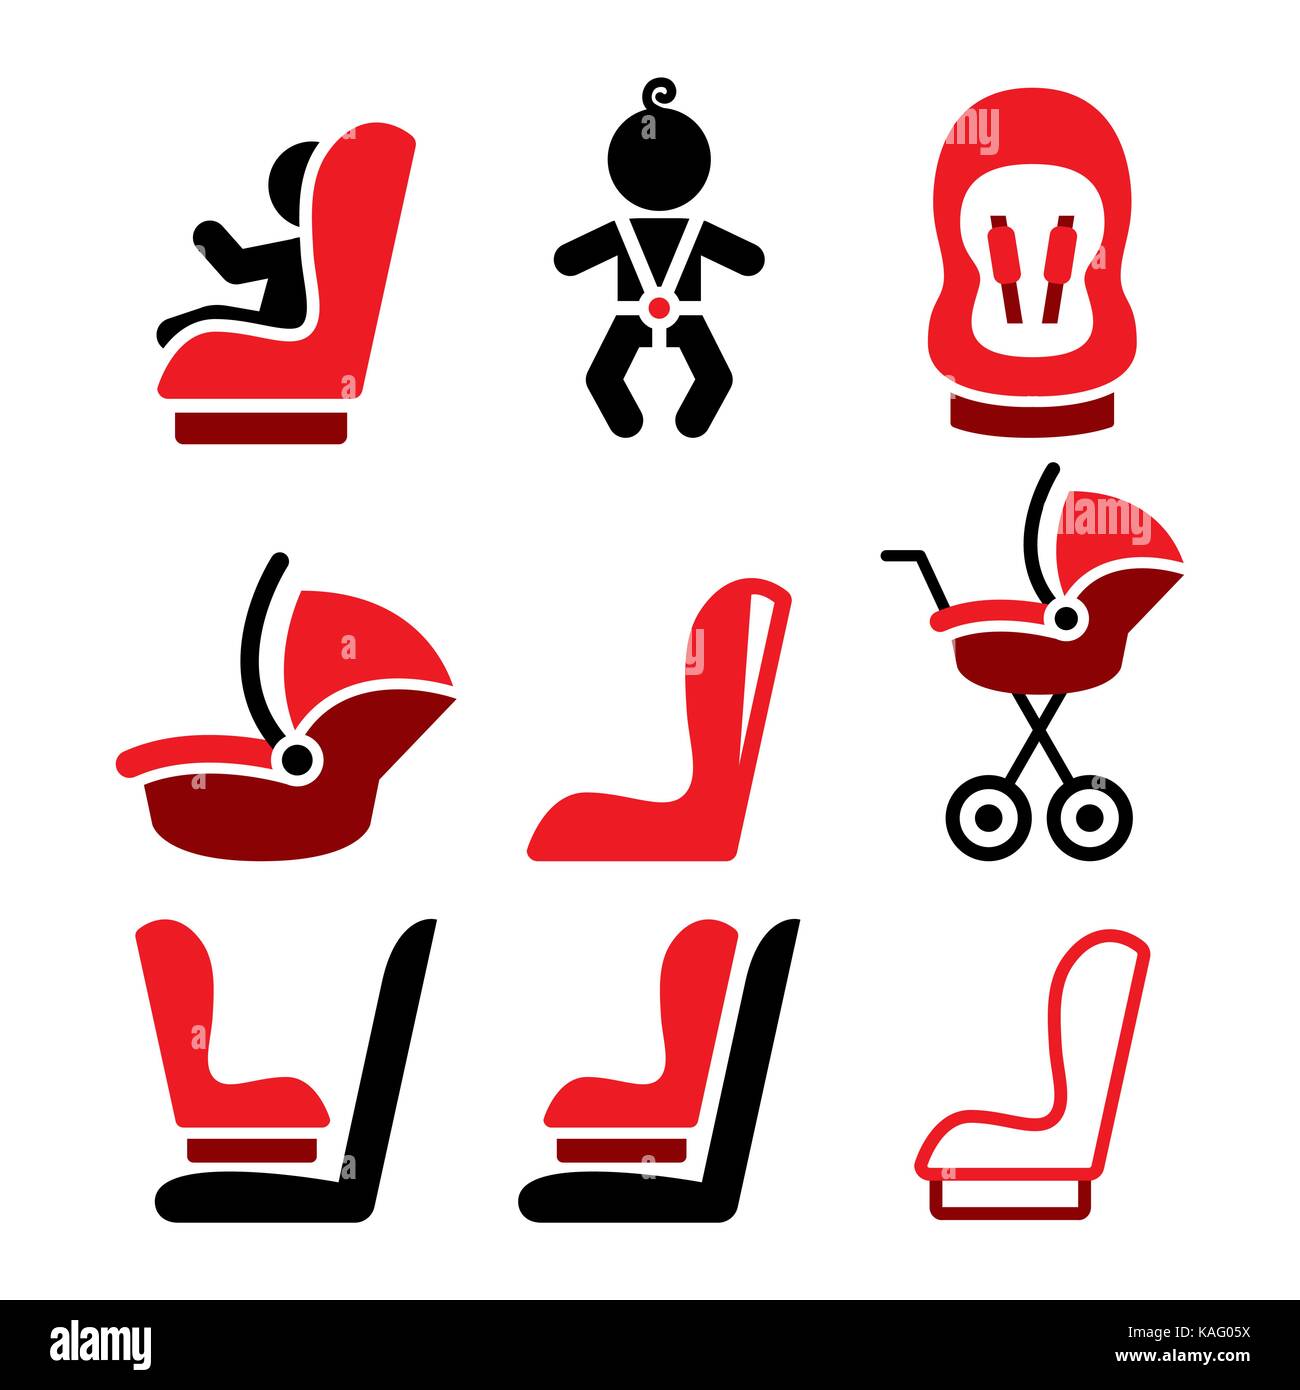 Siège de voiture de bébé vector icons, siège de voiture croisière - coffre enfant voyageant icons Illustration de Vecteur